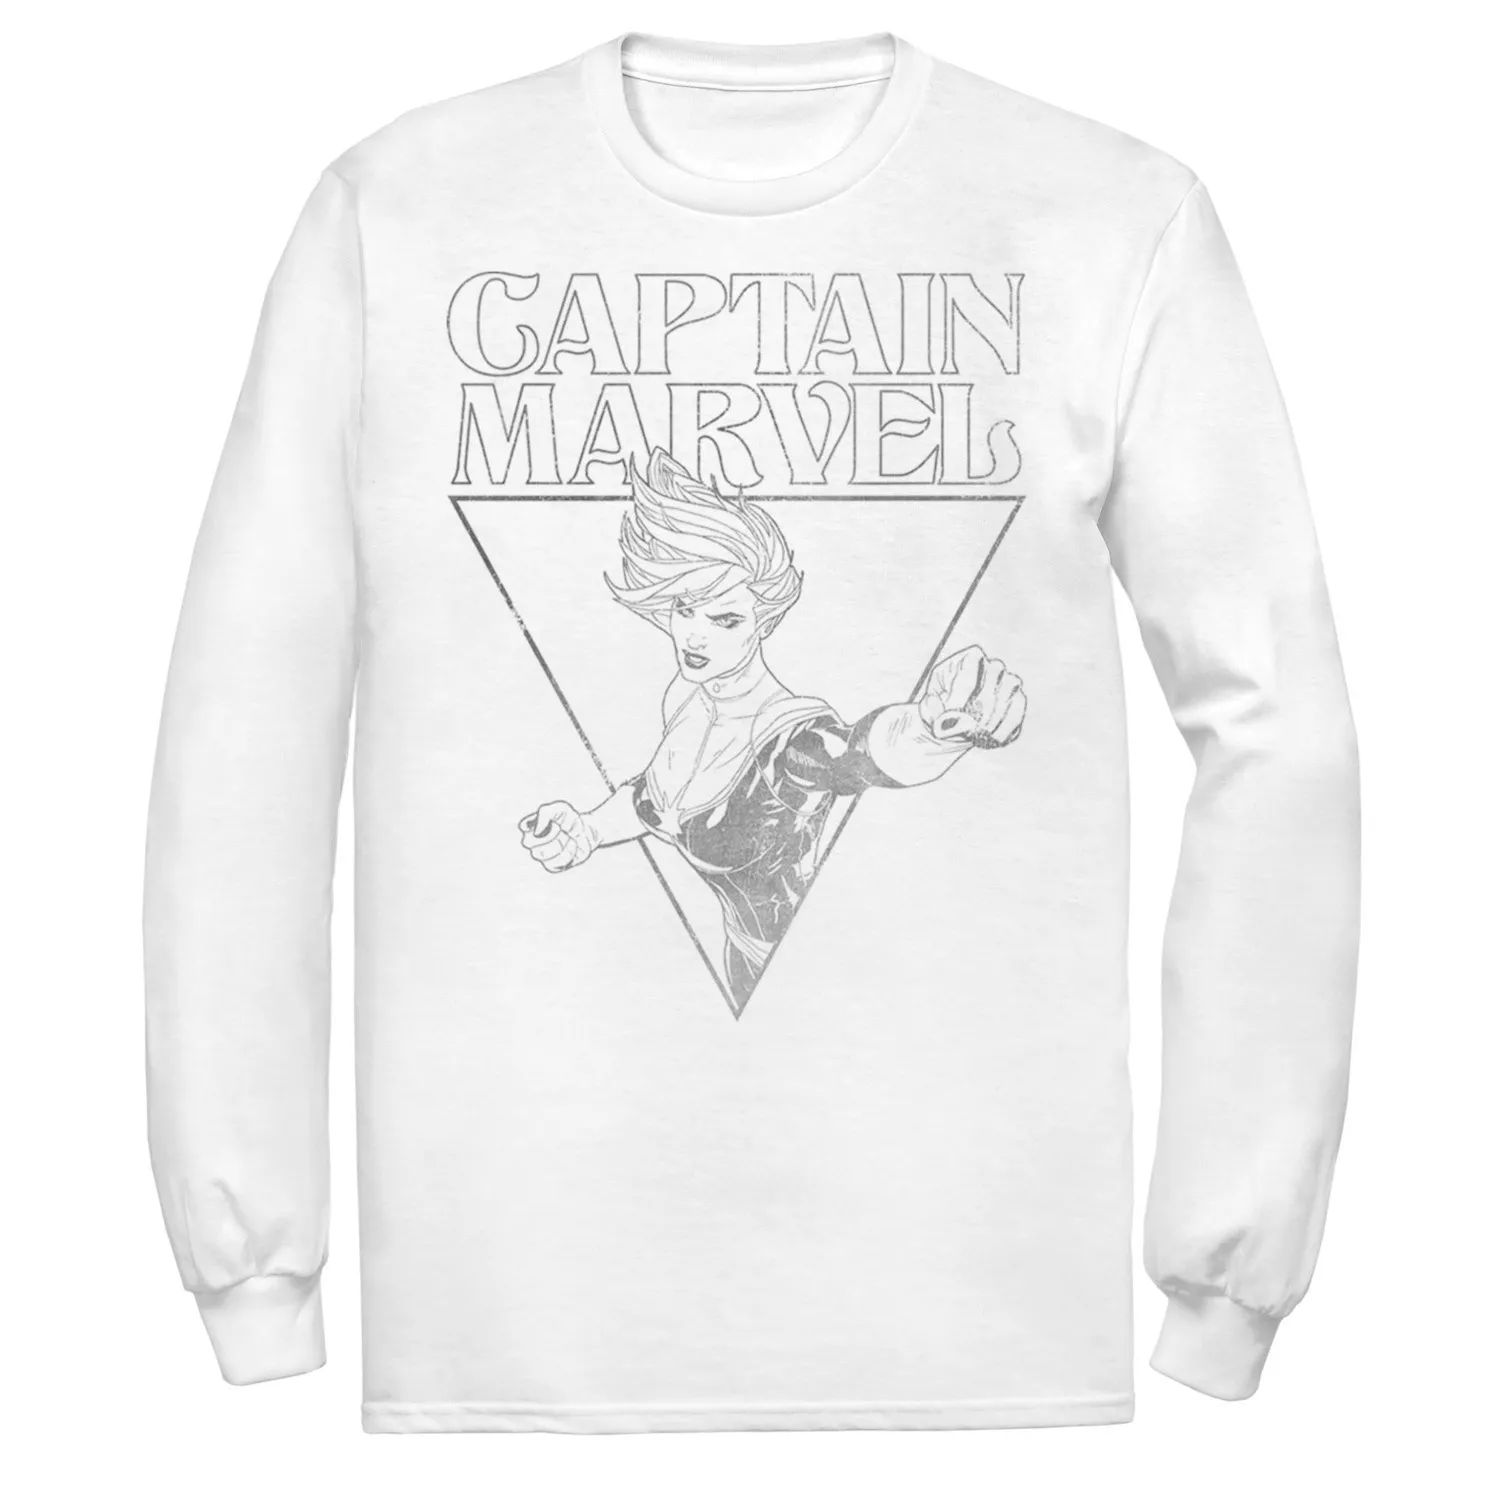 Мужская футболка с треугольным контуром и портретом Капитана Марвела Marvel